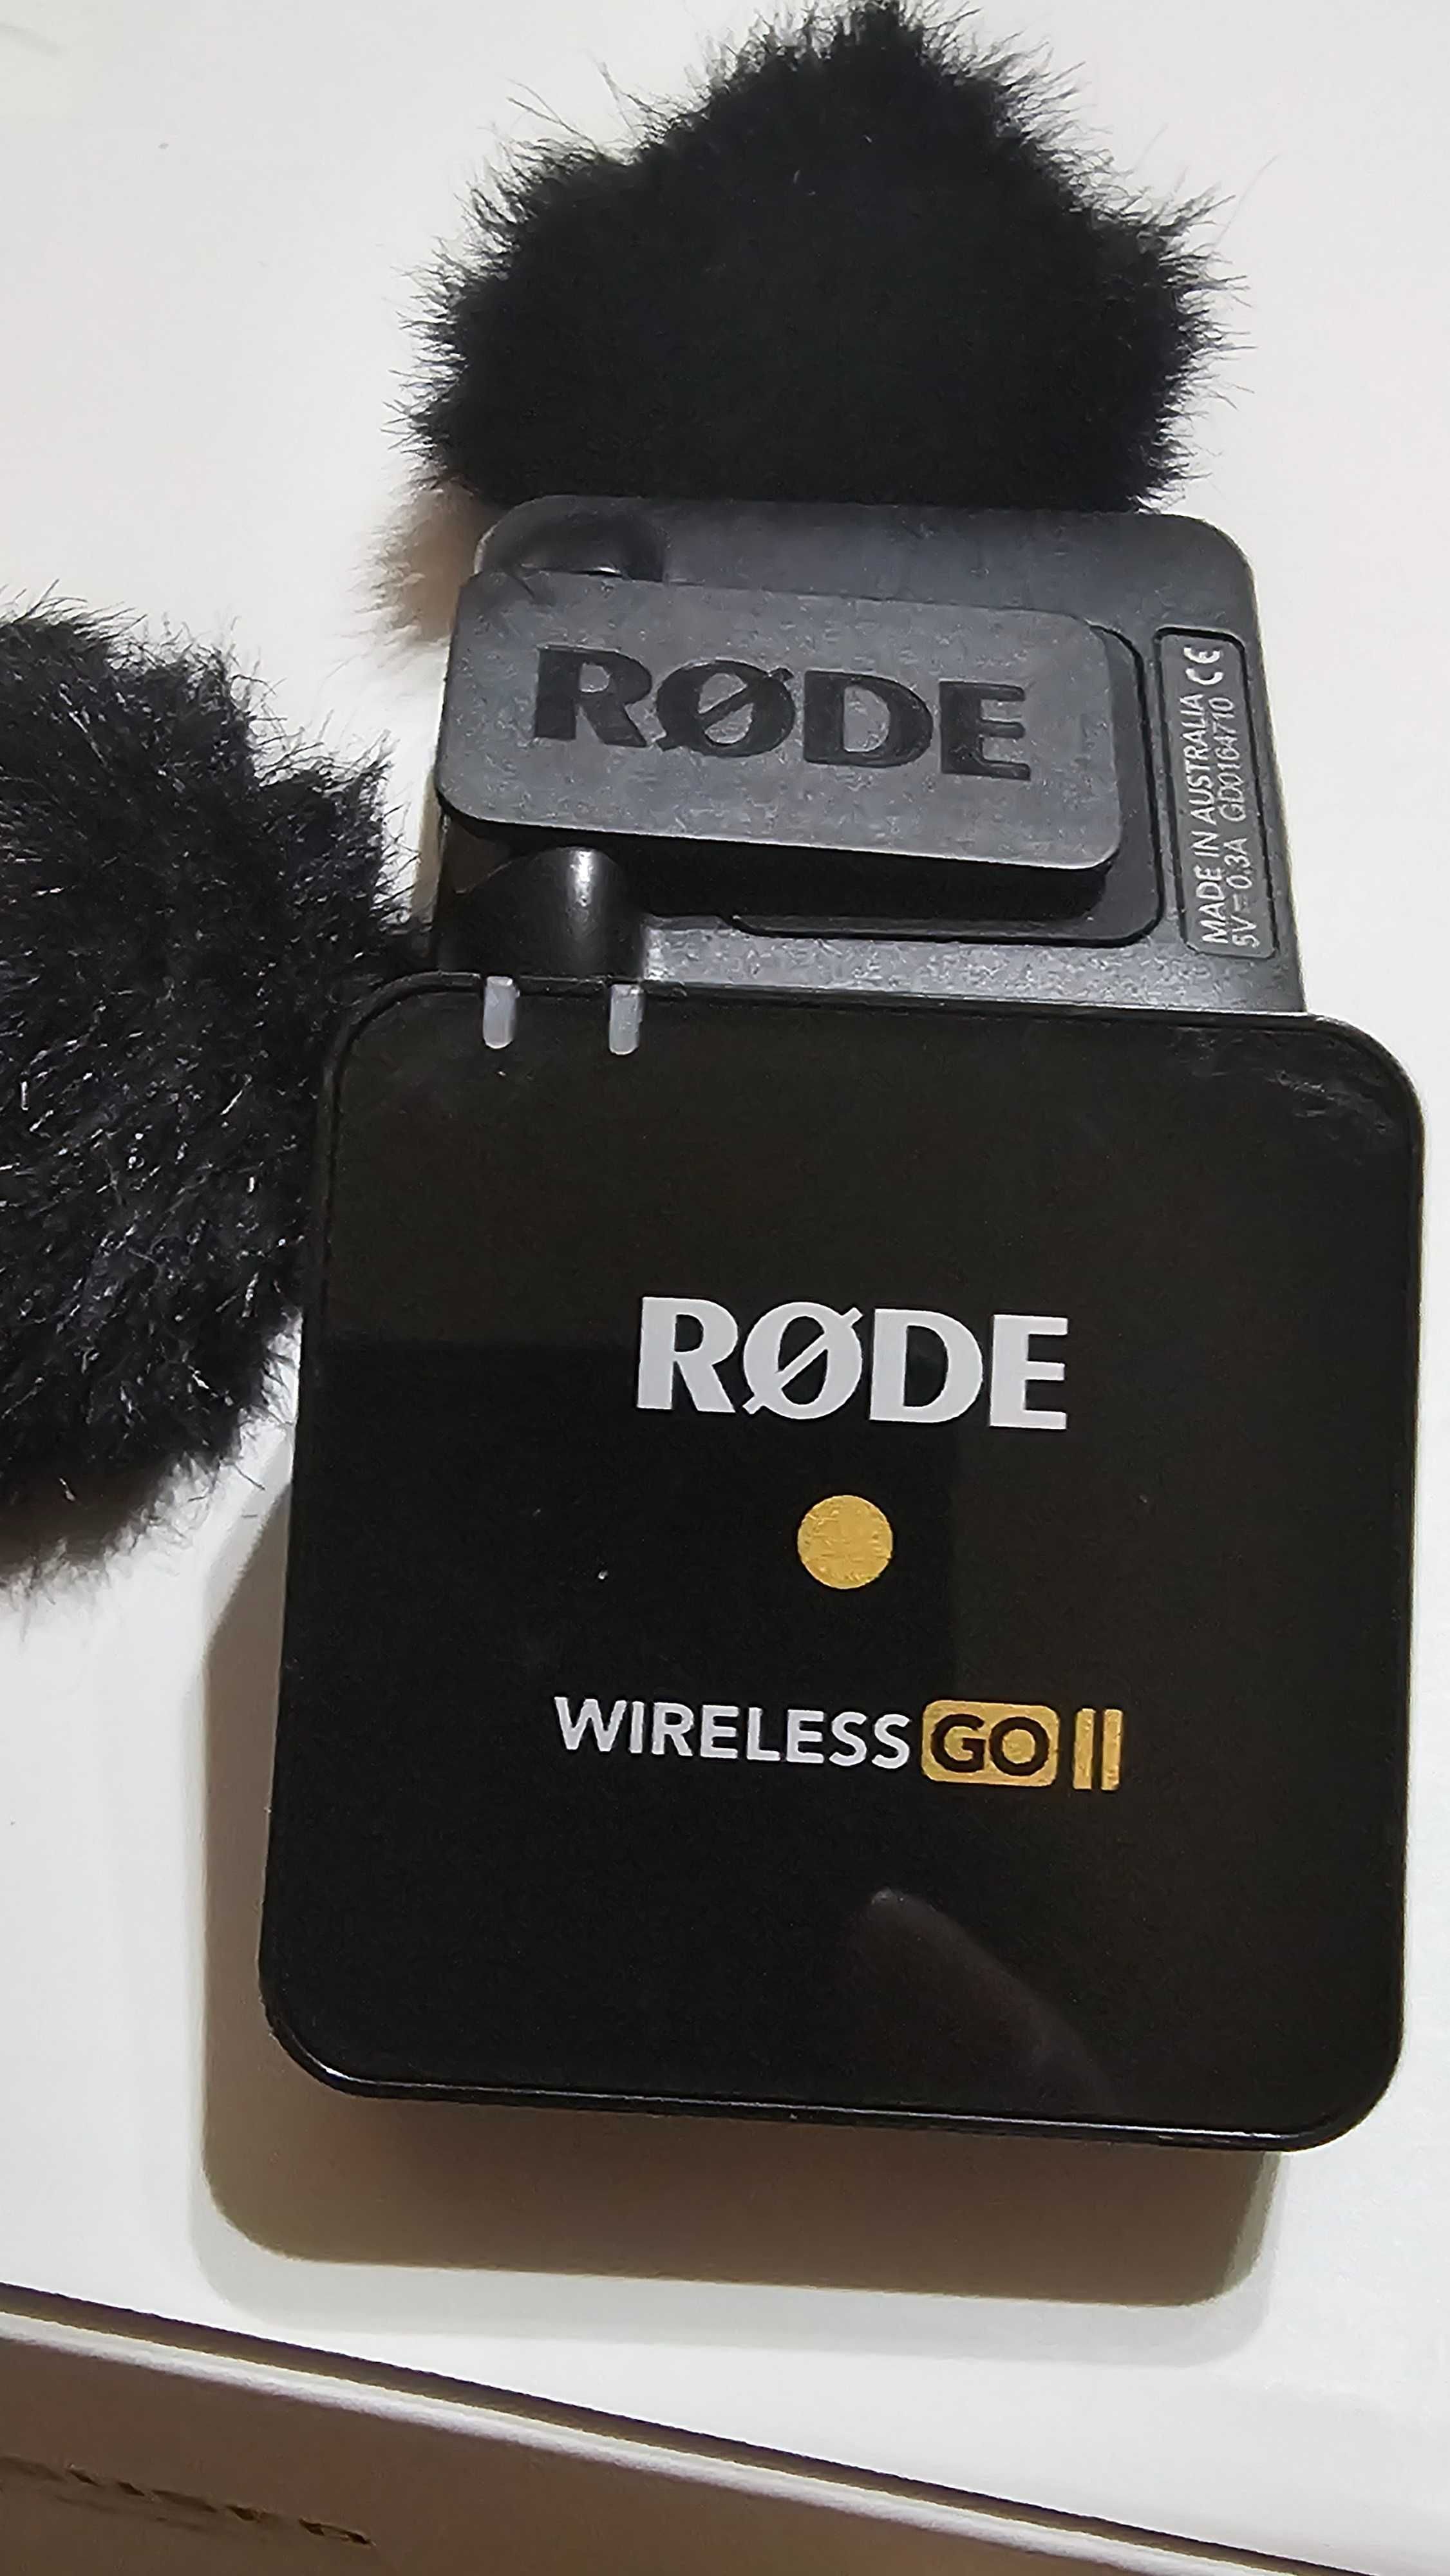 Rode wireless go ii tx